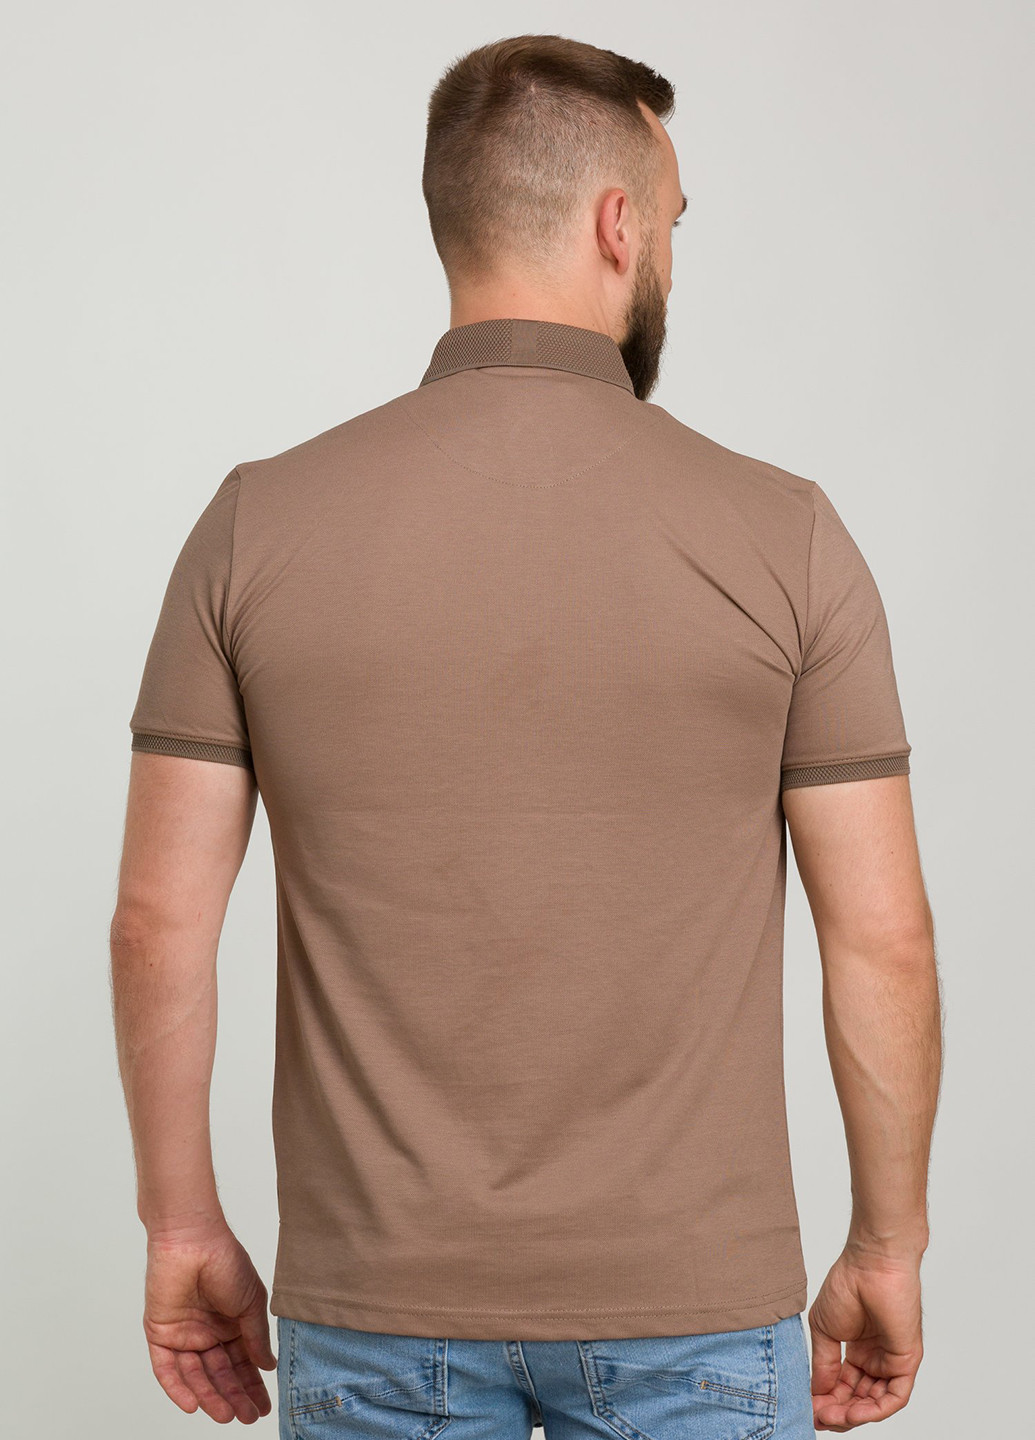 Коричневая футболка-поло для мужчин Trend Collection однотонная